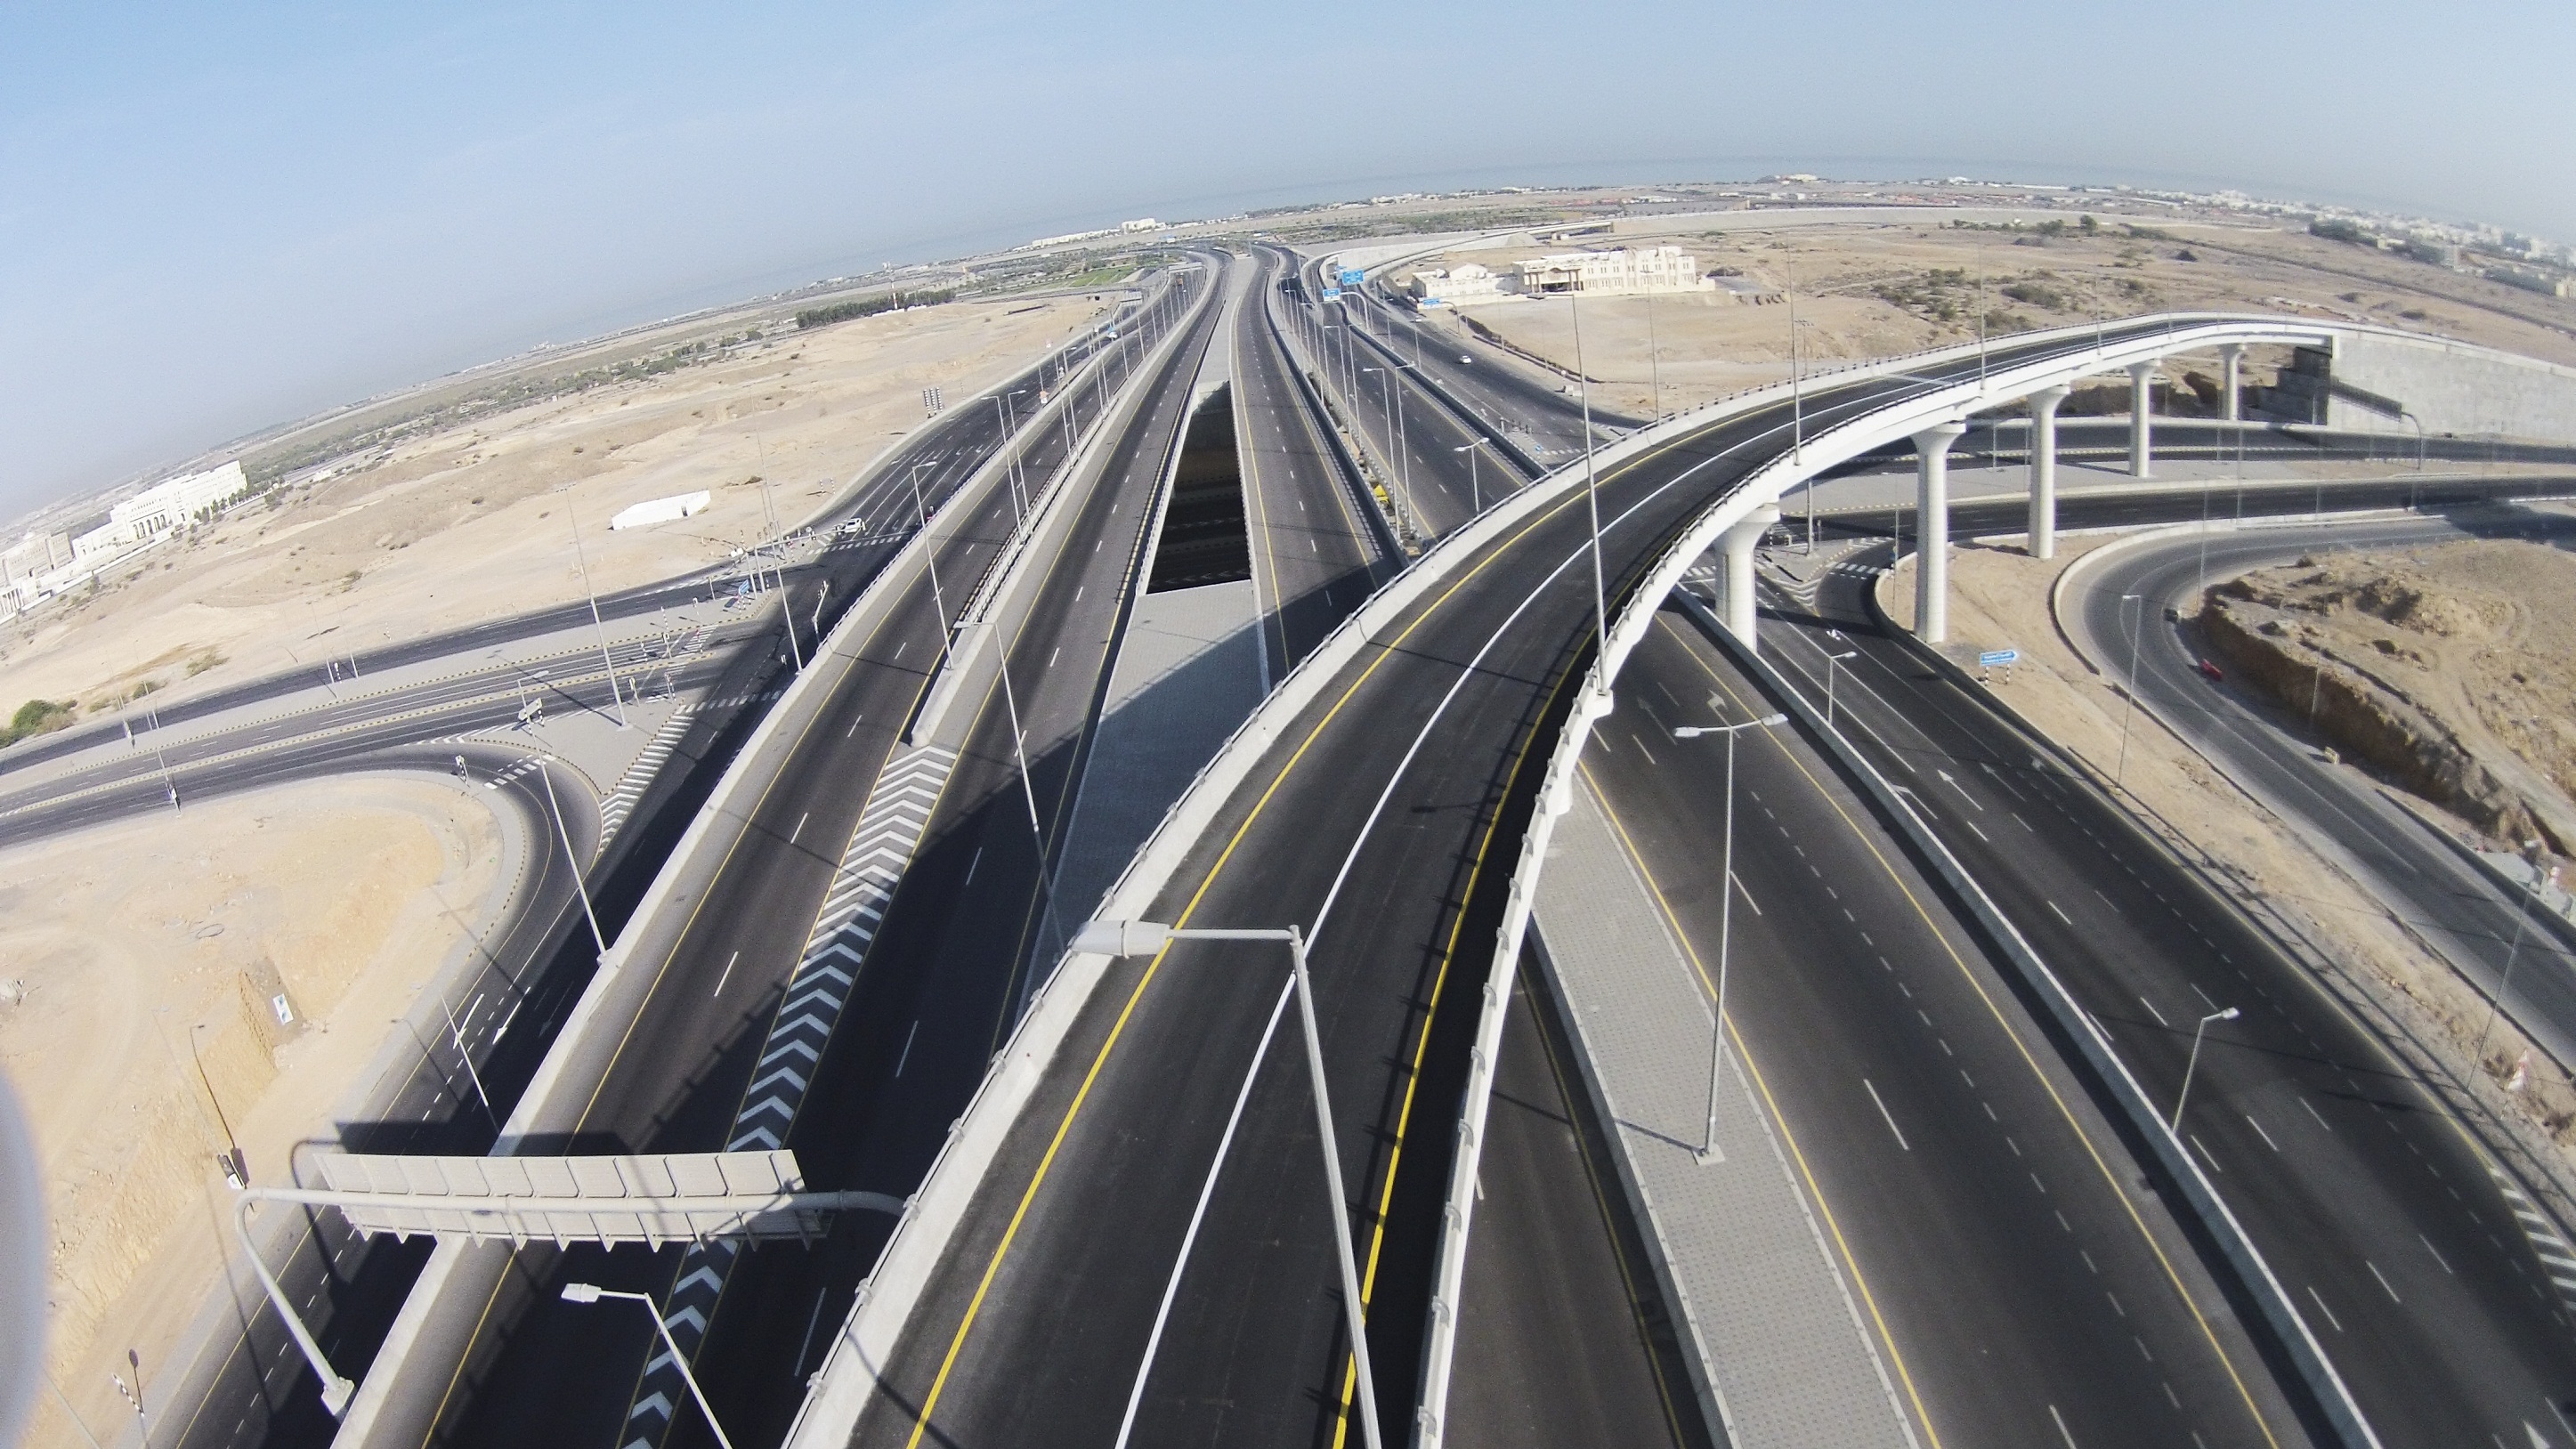 بلدية مسقط تنتهي من تنفيذ مشاريع الطرق الدائرية المرتبطة بمطار مسقط الدولي